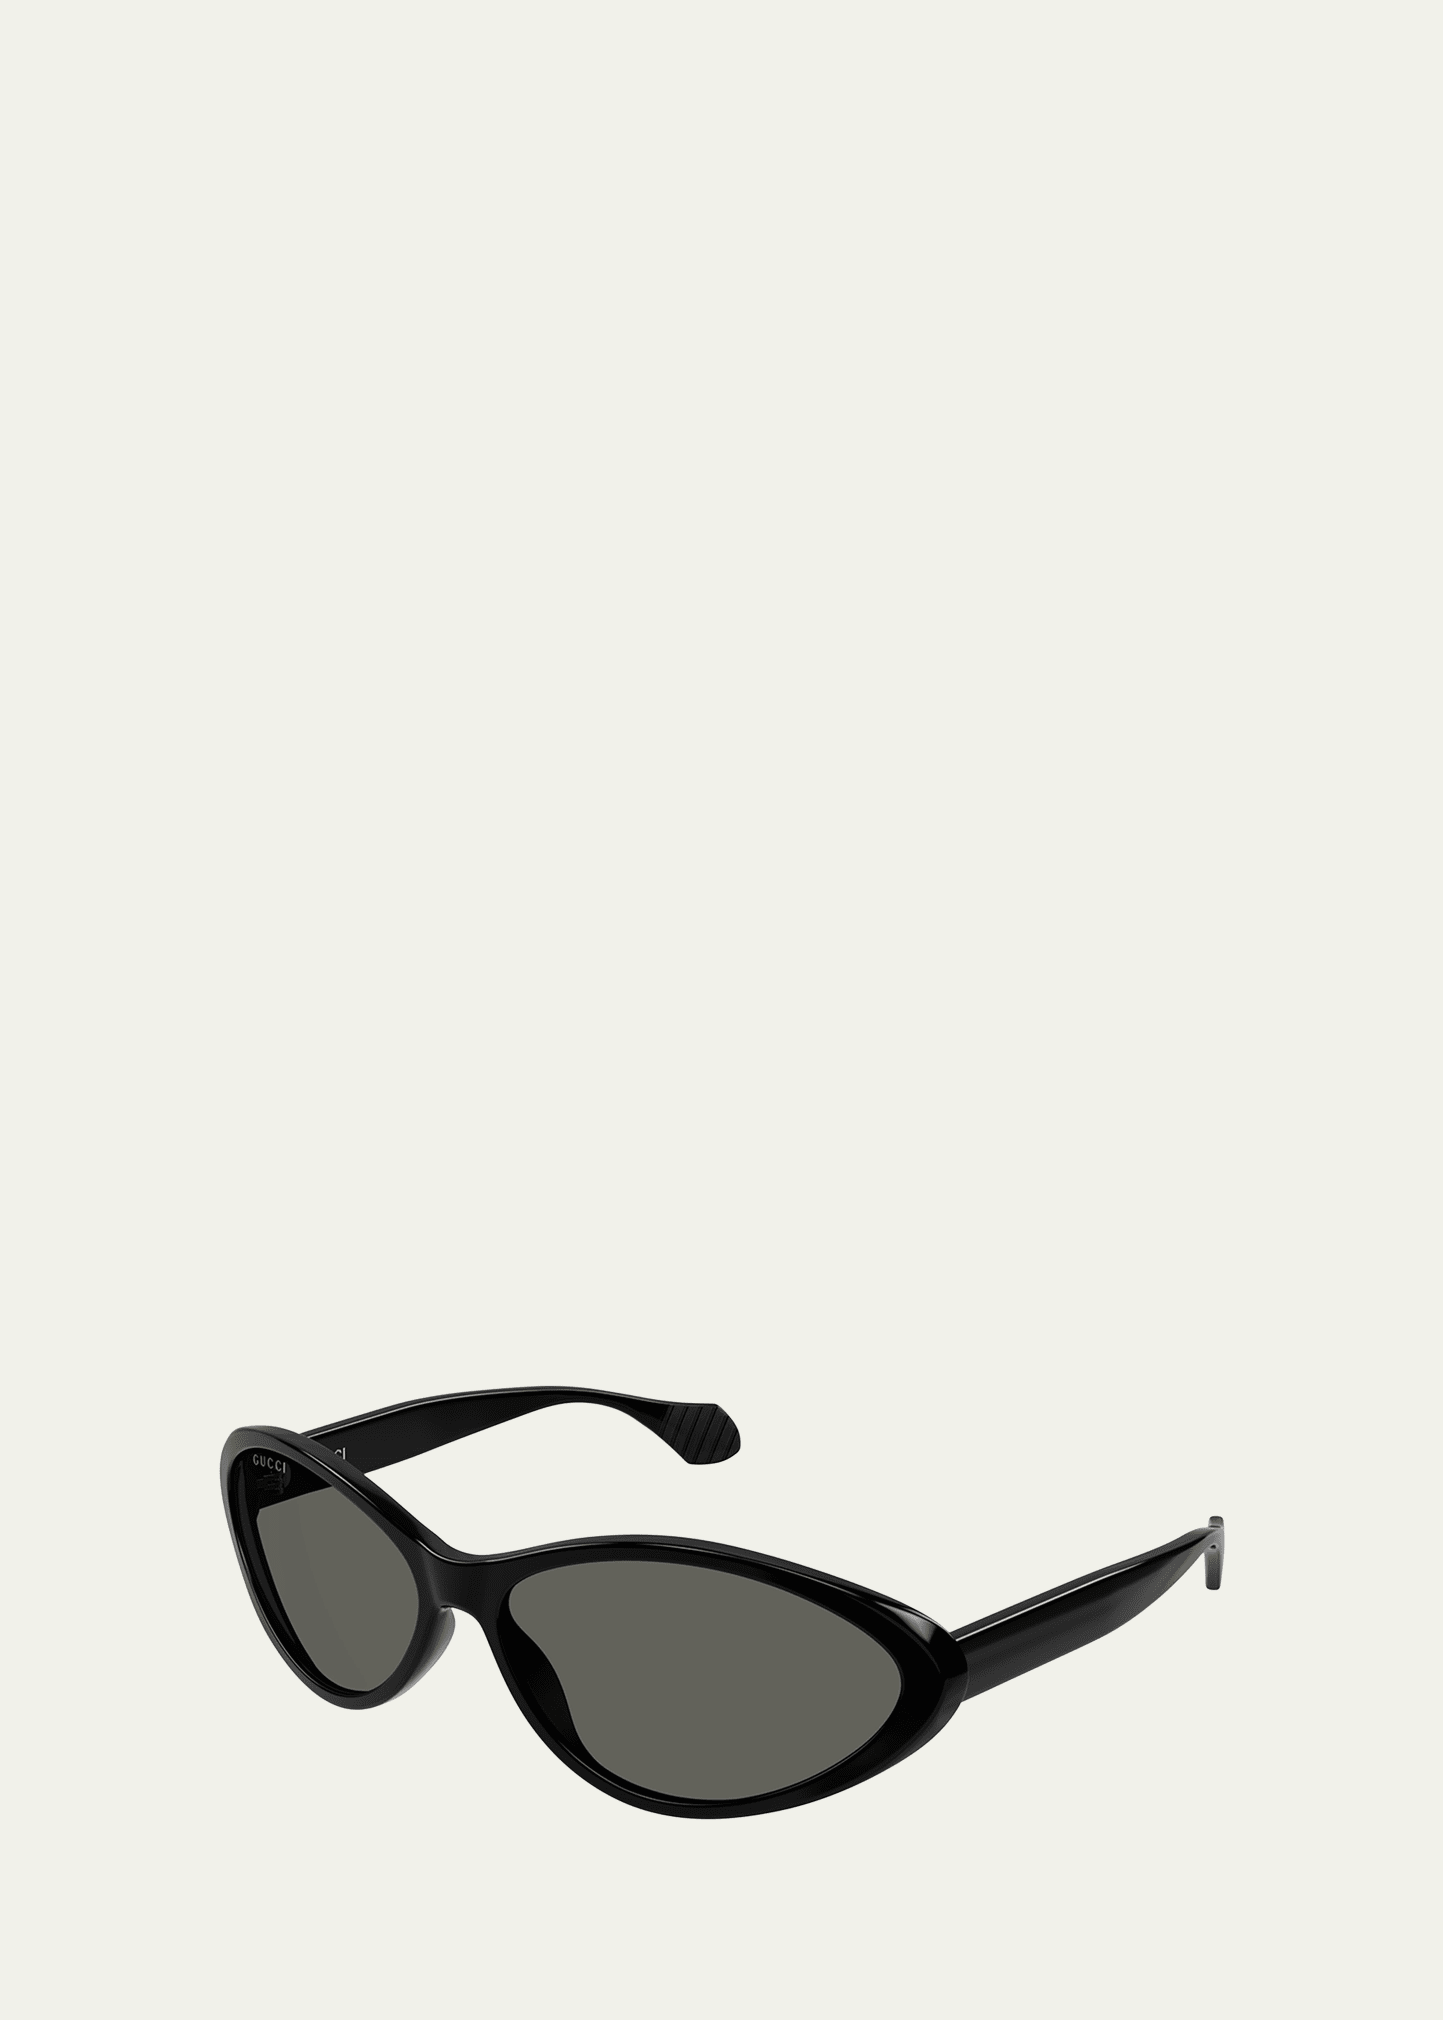 Gucci Women's Fashion Show 67mm Oval Sunglasses In Black